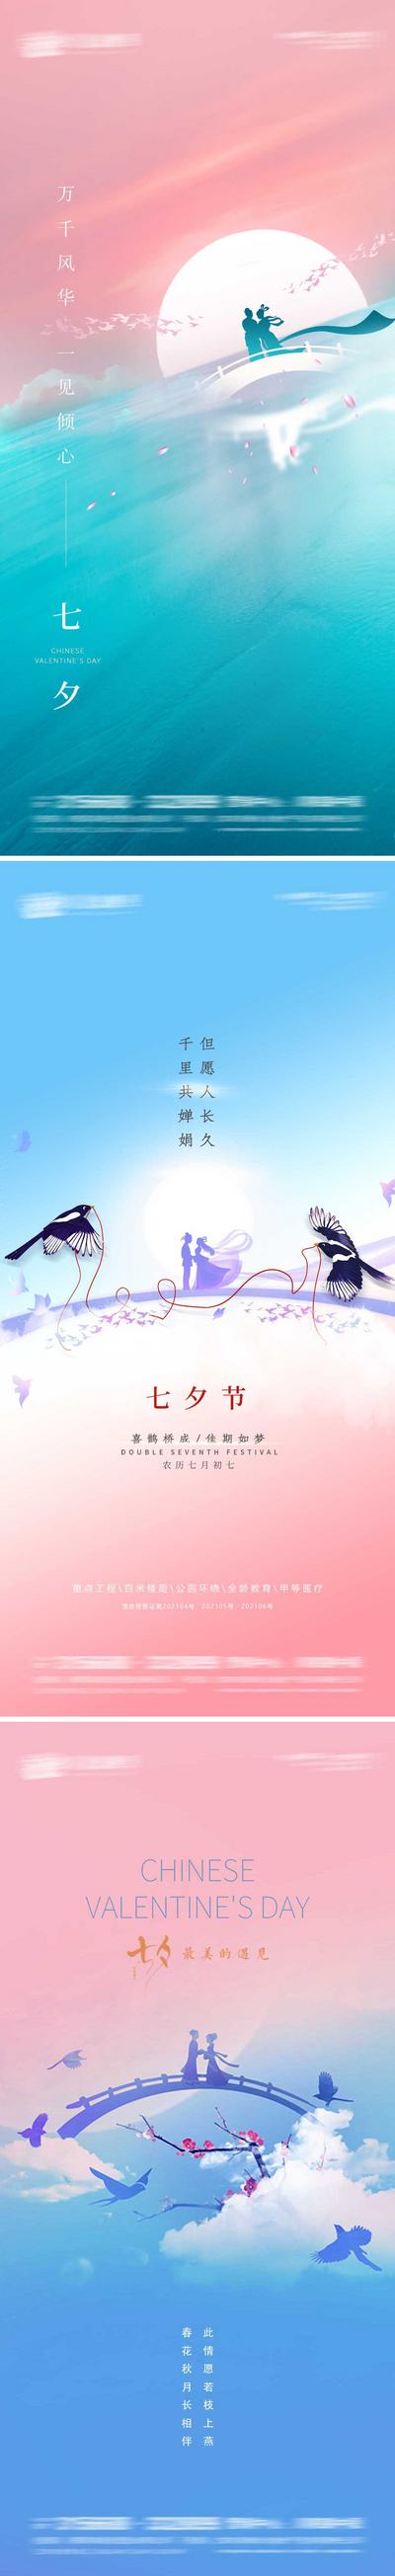 南门网 海报 地产 中国传统节日 七夕 情人节 牛郎织女 鹊桥 